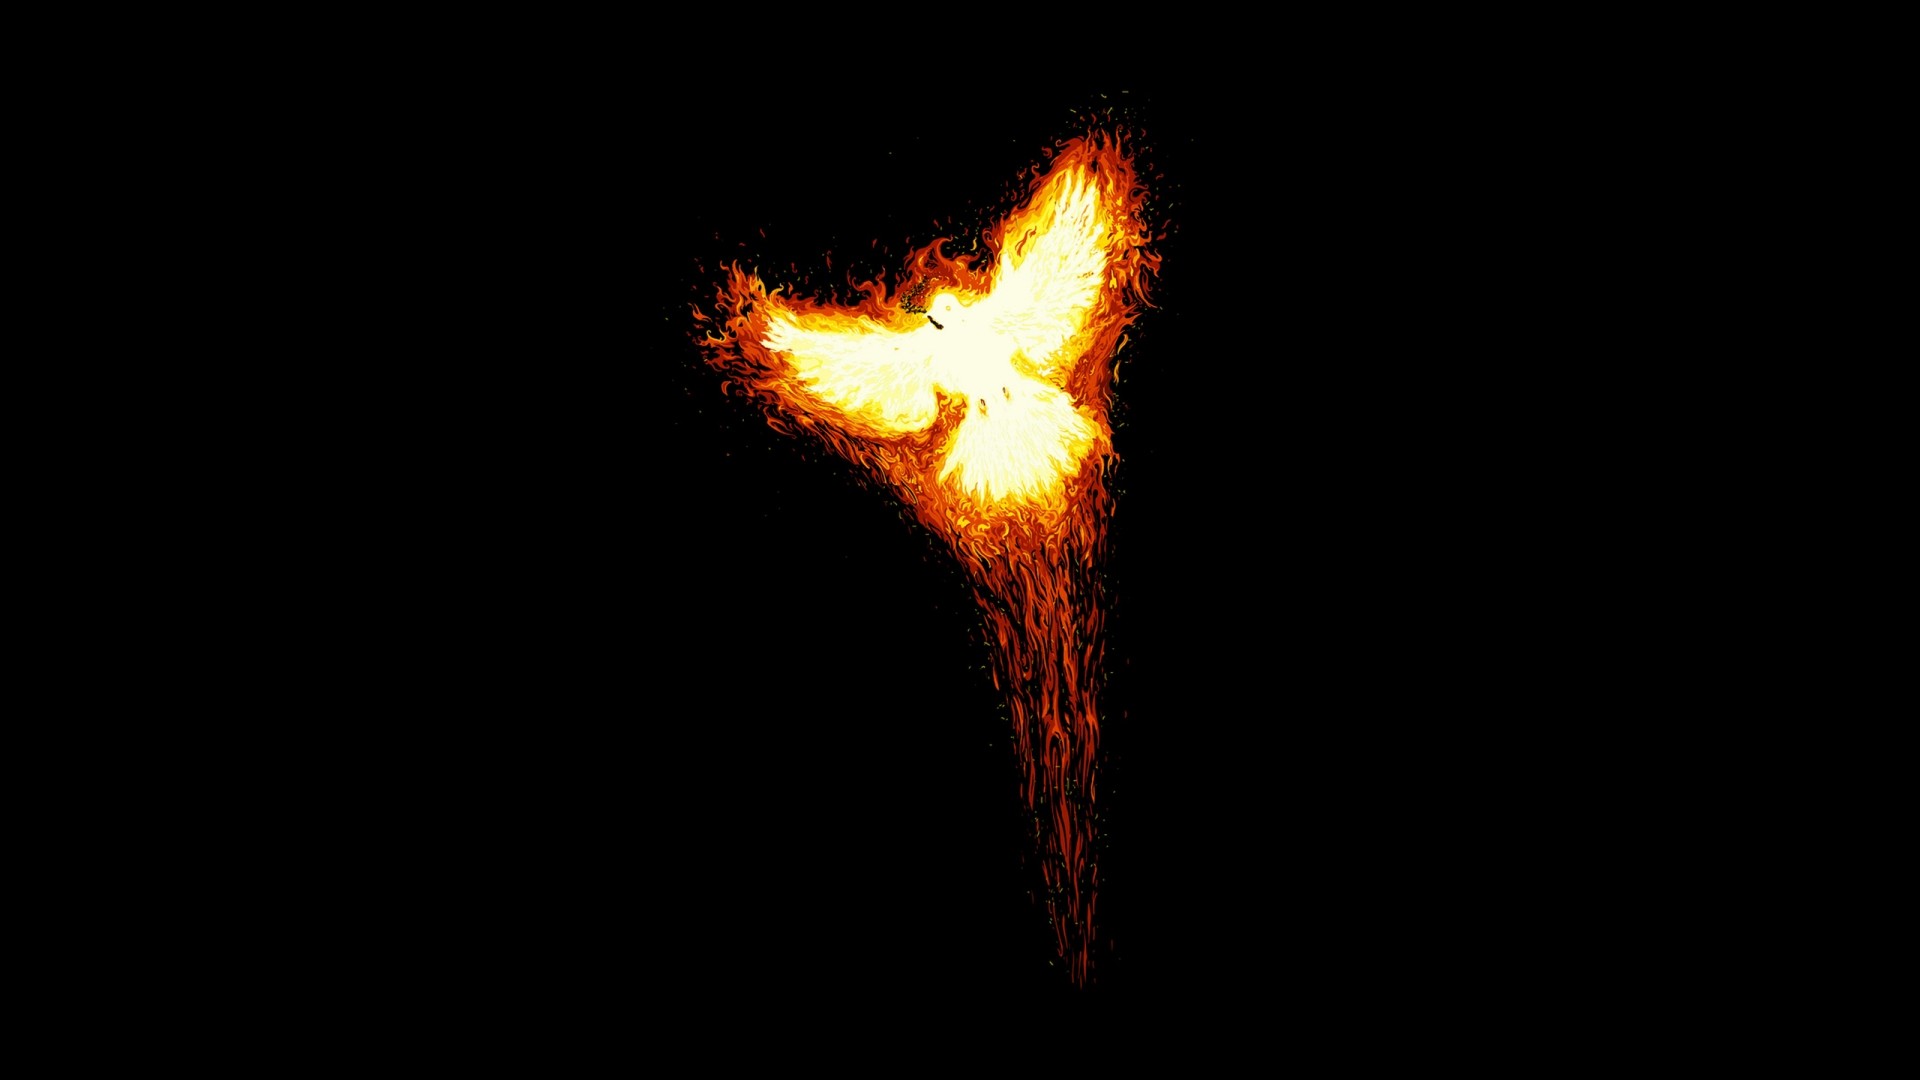 Phoenix bird in the flames   Abstract dark wallpaper